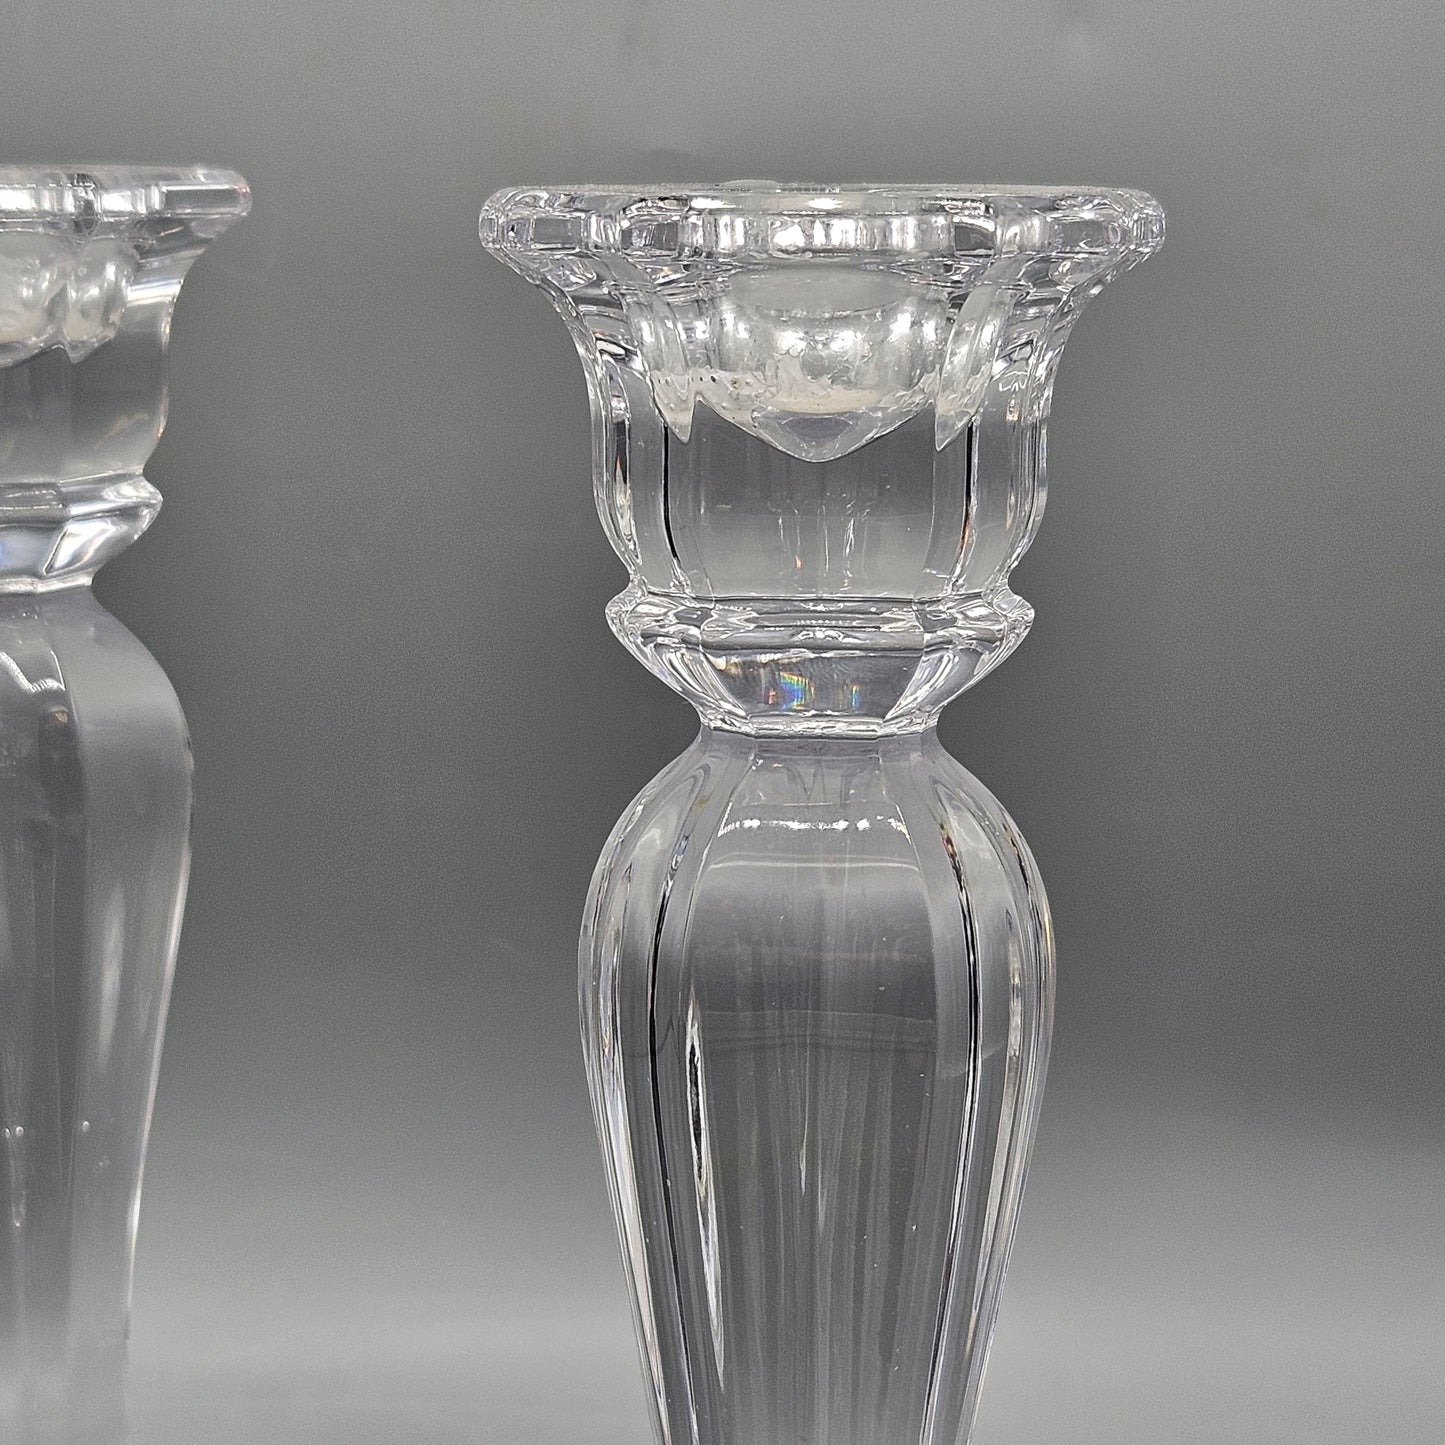 Pair of Vintage Oscar DeLa Renta Chippendale Crystal Candlesticks